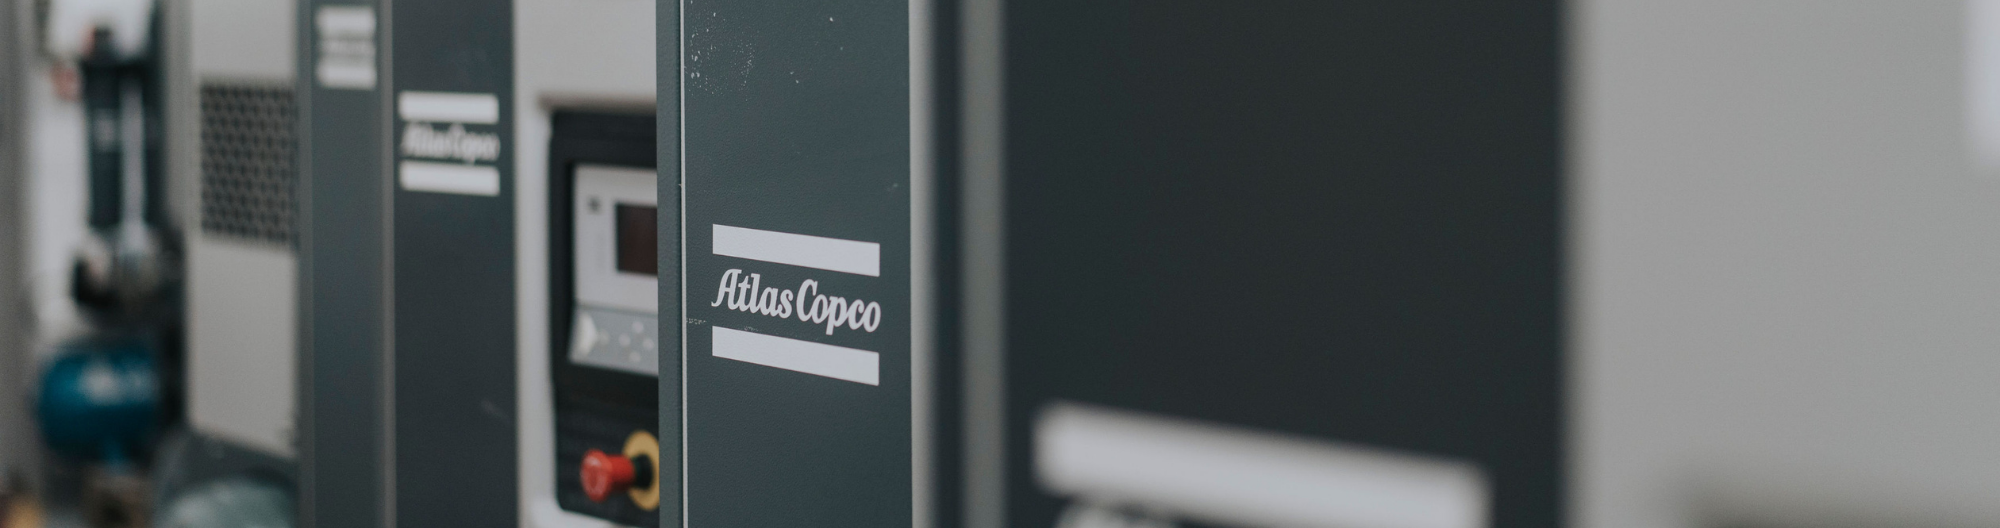 Atlas Copco air compressors